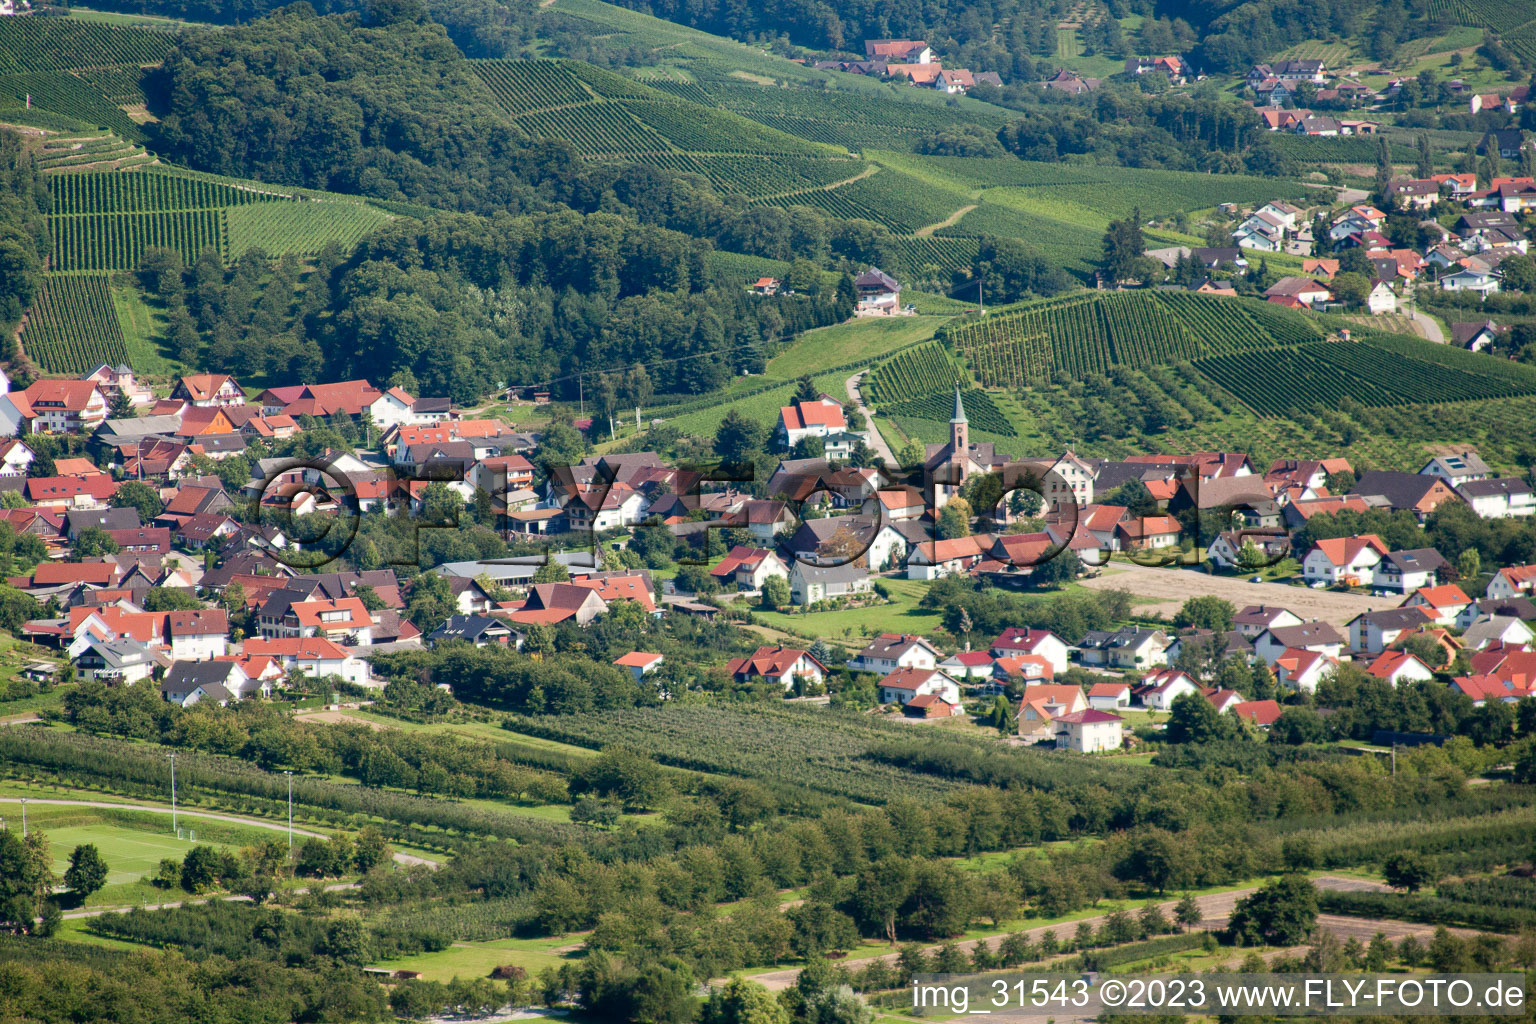 Luftbild von Ortsteil Haslach in Oberkirch im Bundesland Baden-Württemberg, Deutschland